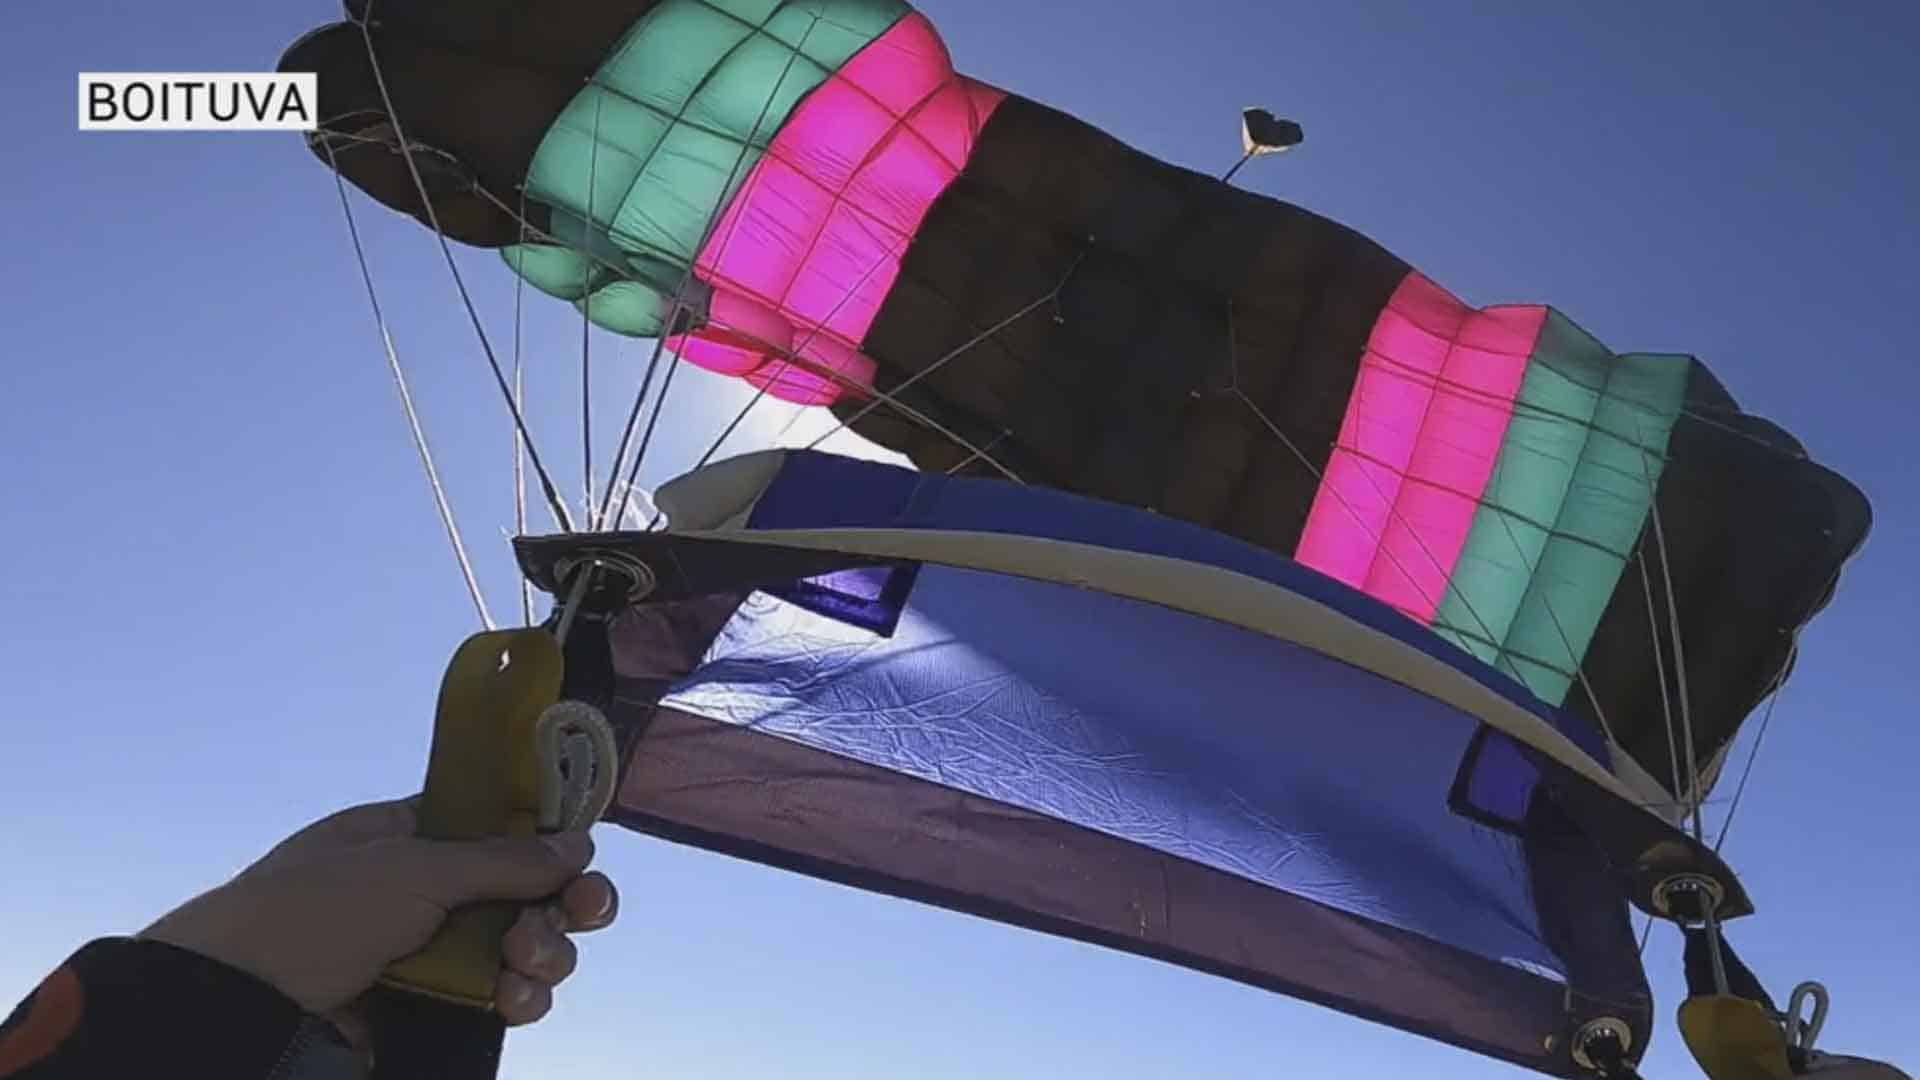 Atividades no Centro de Paraquedismo de Boituva são retomadas